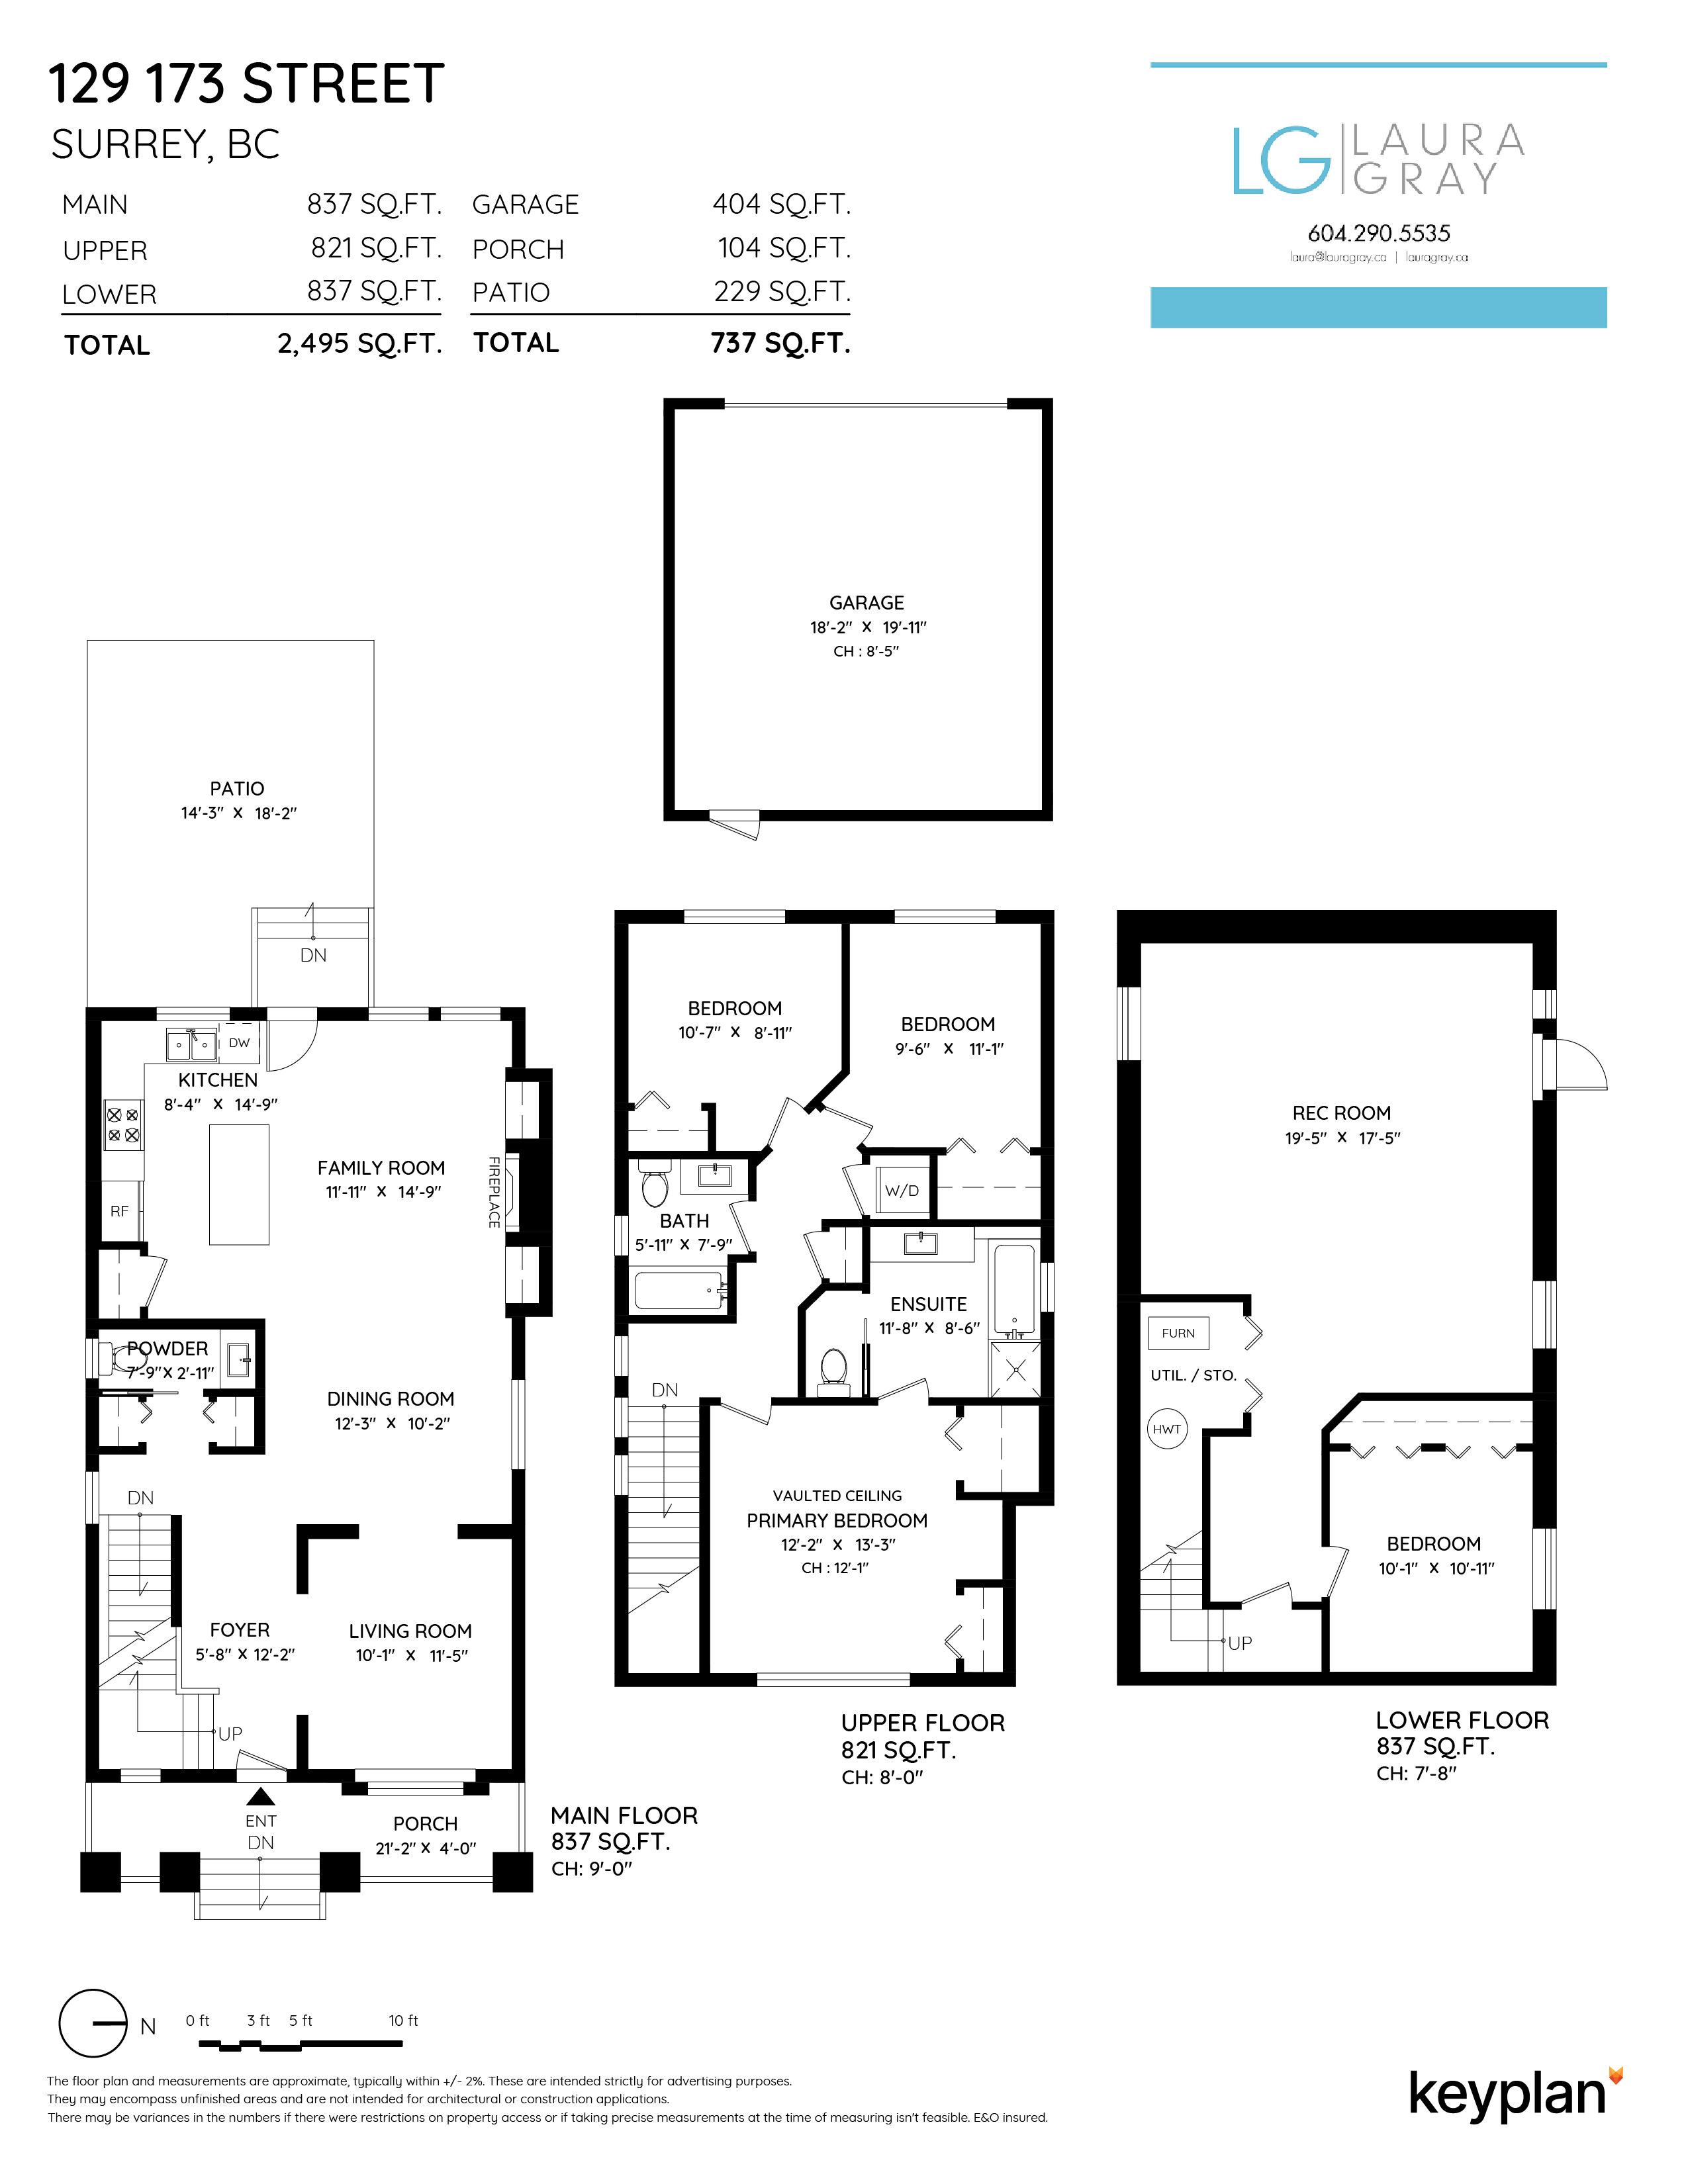 Laura Gray - 129 173 Street, Surrey, BC, Canada | Floor Plan 1